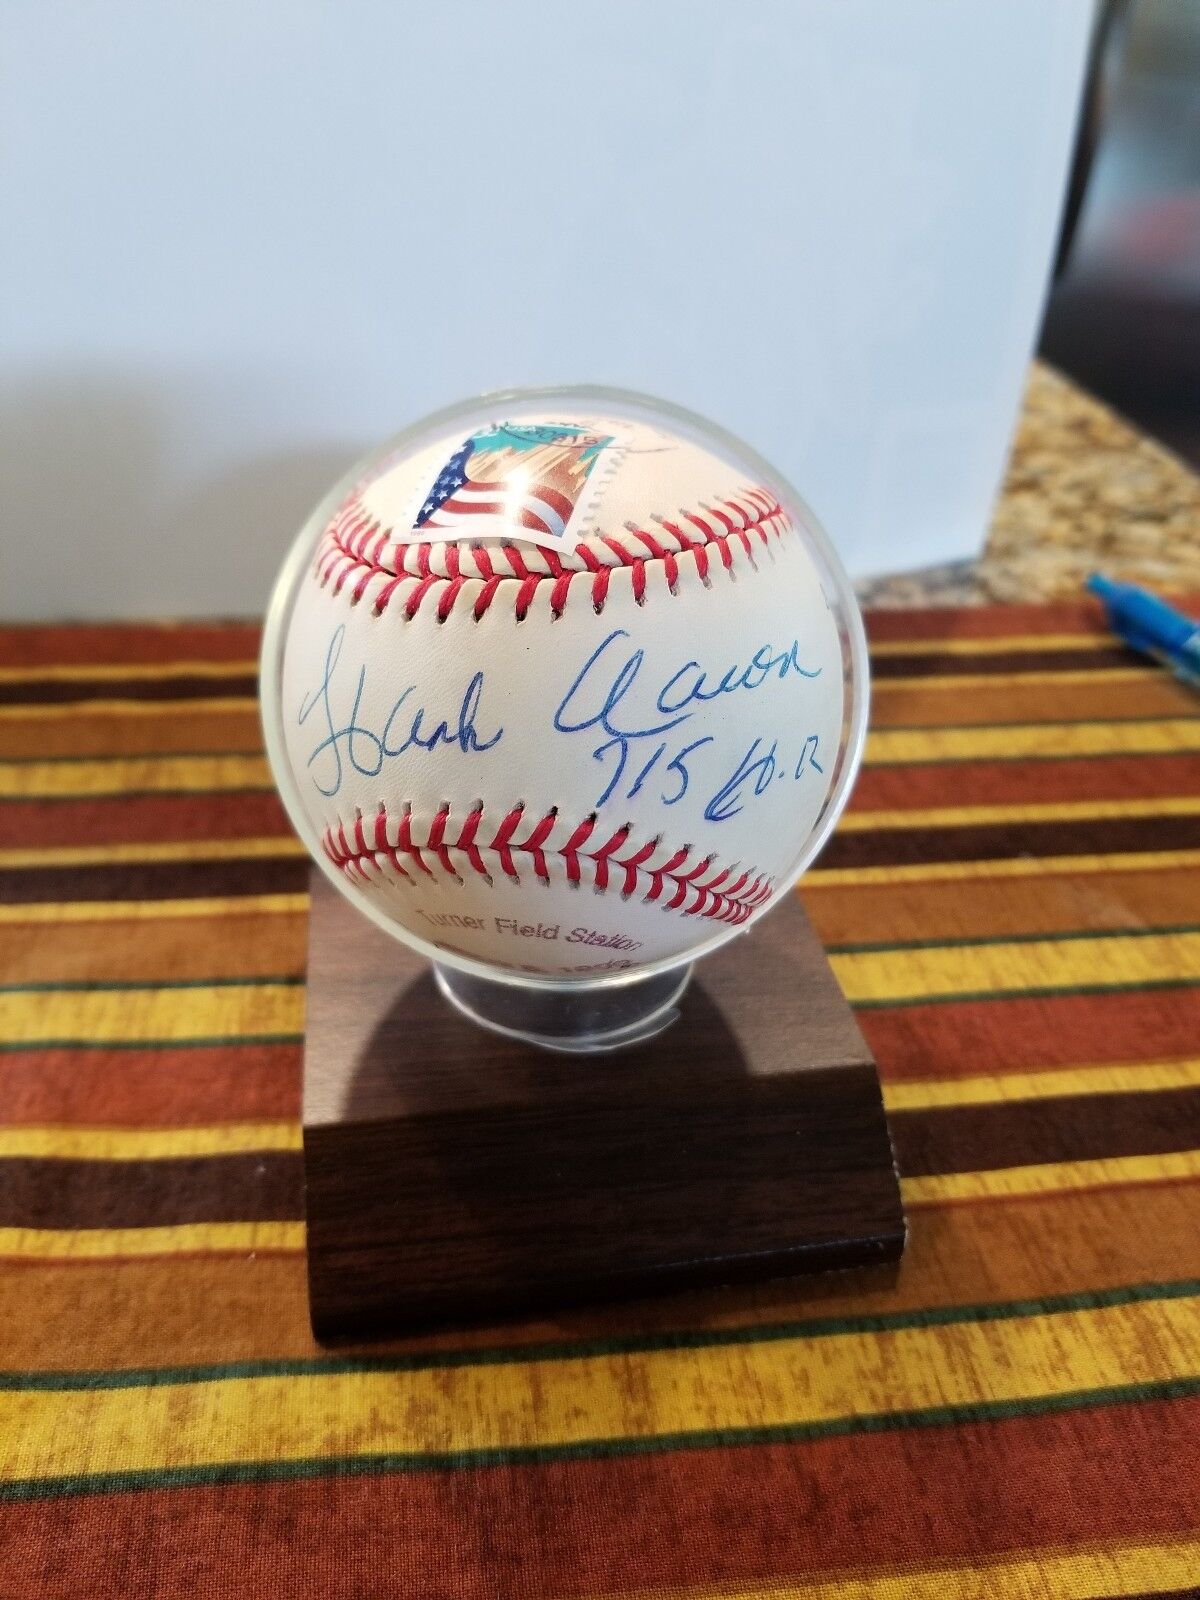 Hank Aarron Autographed Baseball-Rare 715 Home Runs Commemorative.